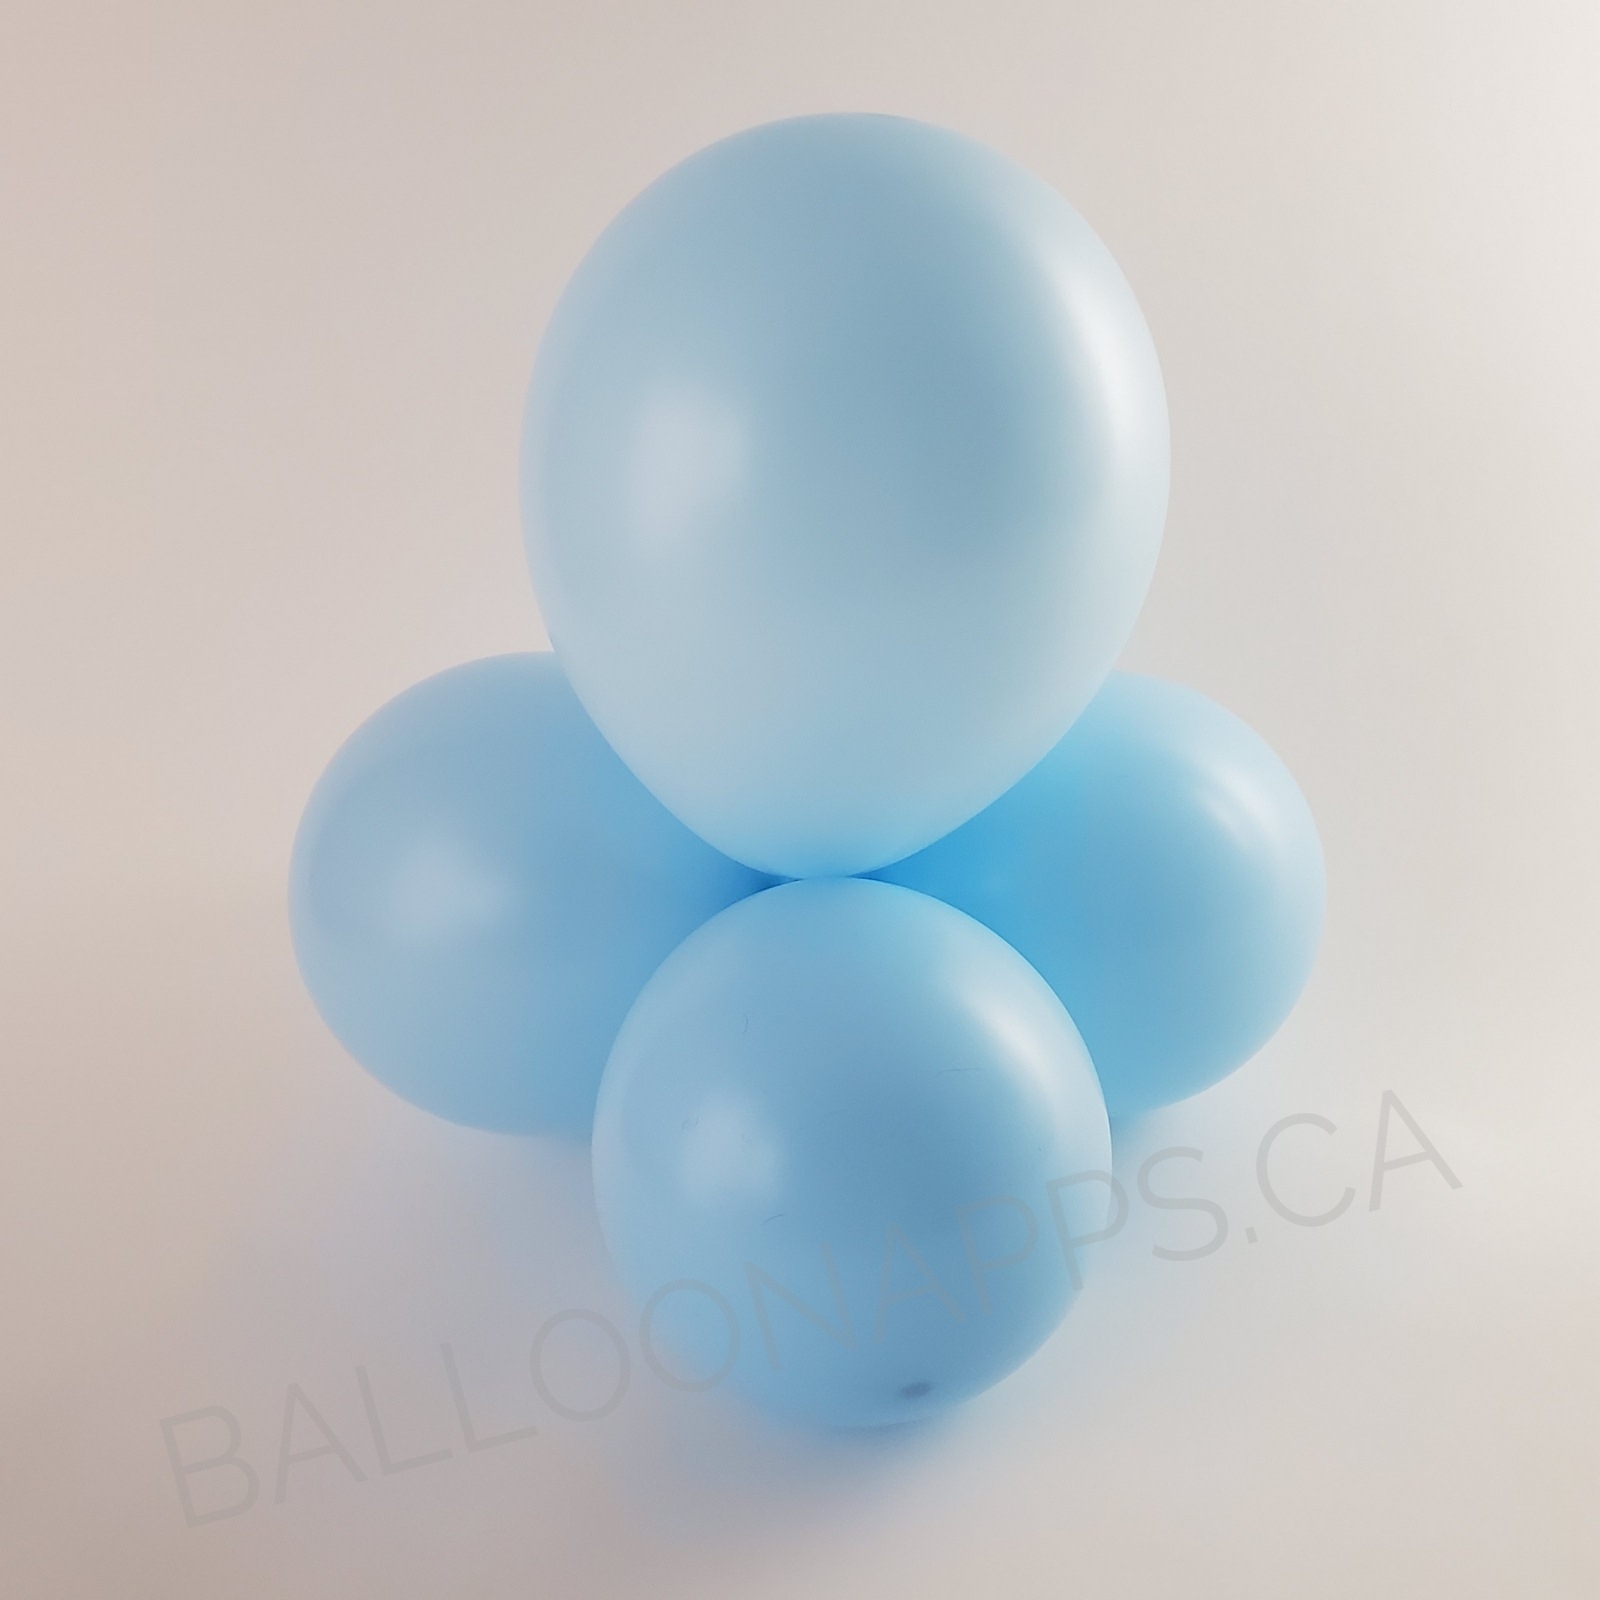 balloon texture TUFTEX (50) 5